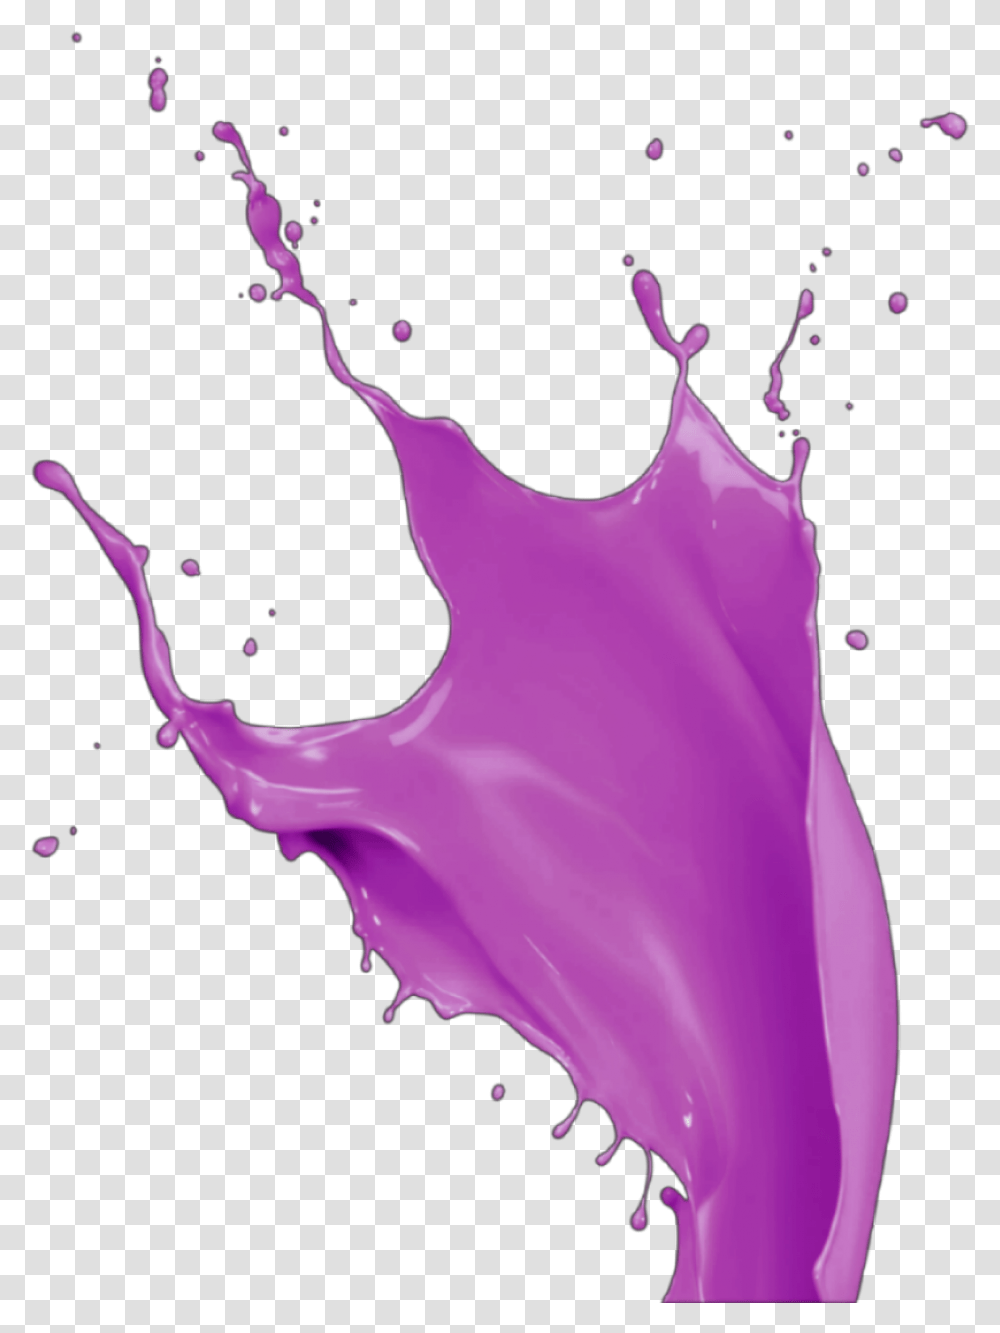 Paint Pintura Liquido Lquido Gotas Drops Mancha Illustration, Purple, Person Transparent Png